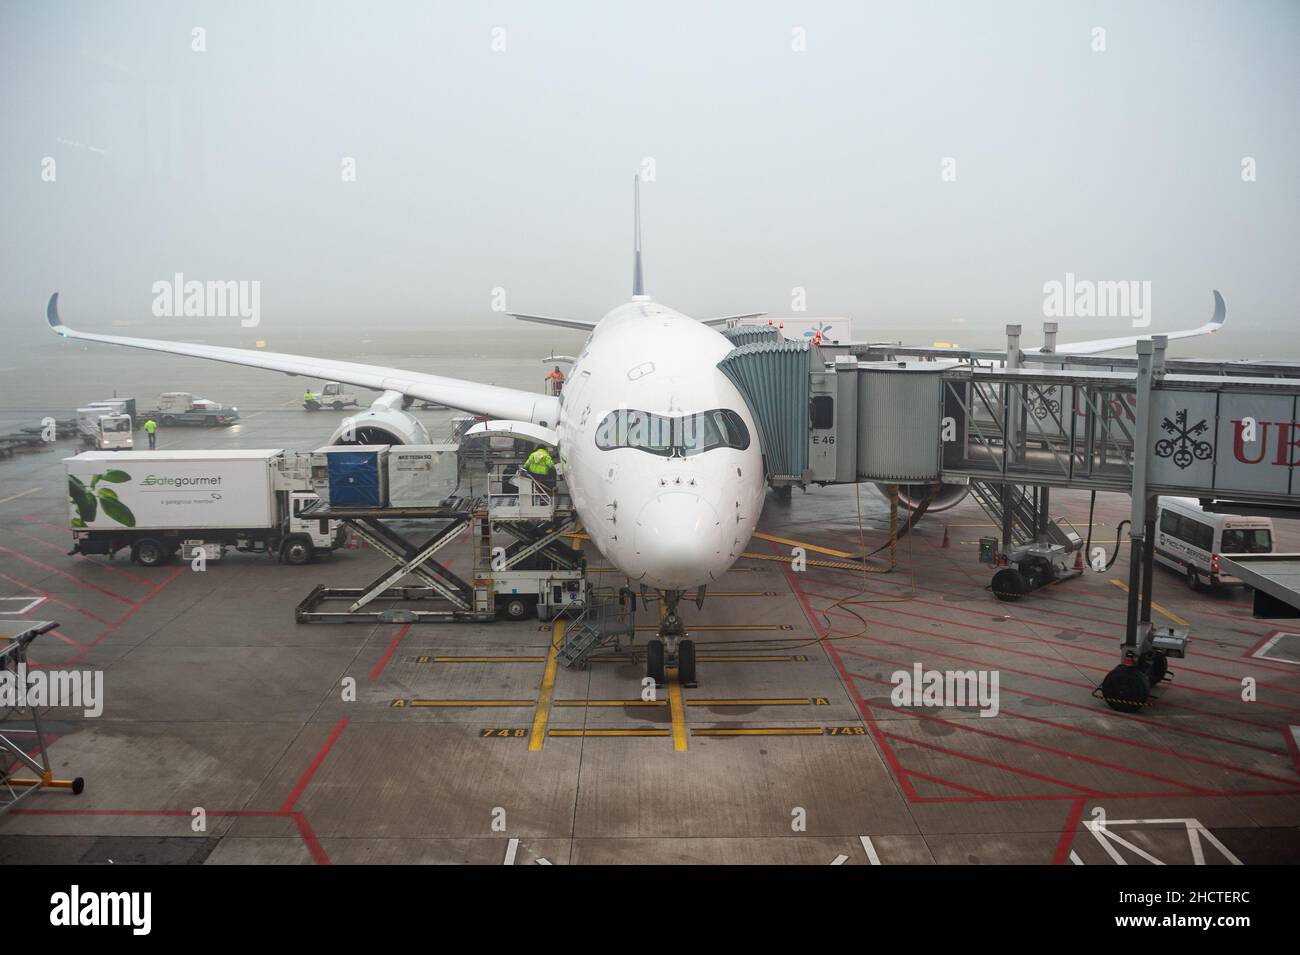 14.12.2021, Zürich, Schweiz, Europa - Singapore Airlines der Airbus A350 wird am Gate des Dock E Terminals am Flughafen Zürich geparkt. Stockfoto